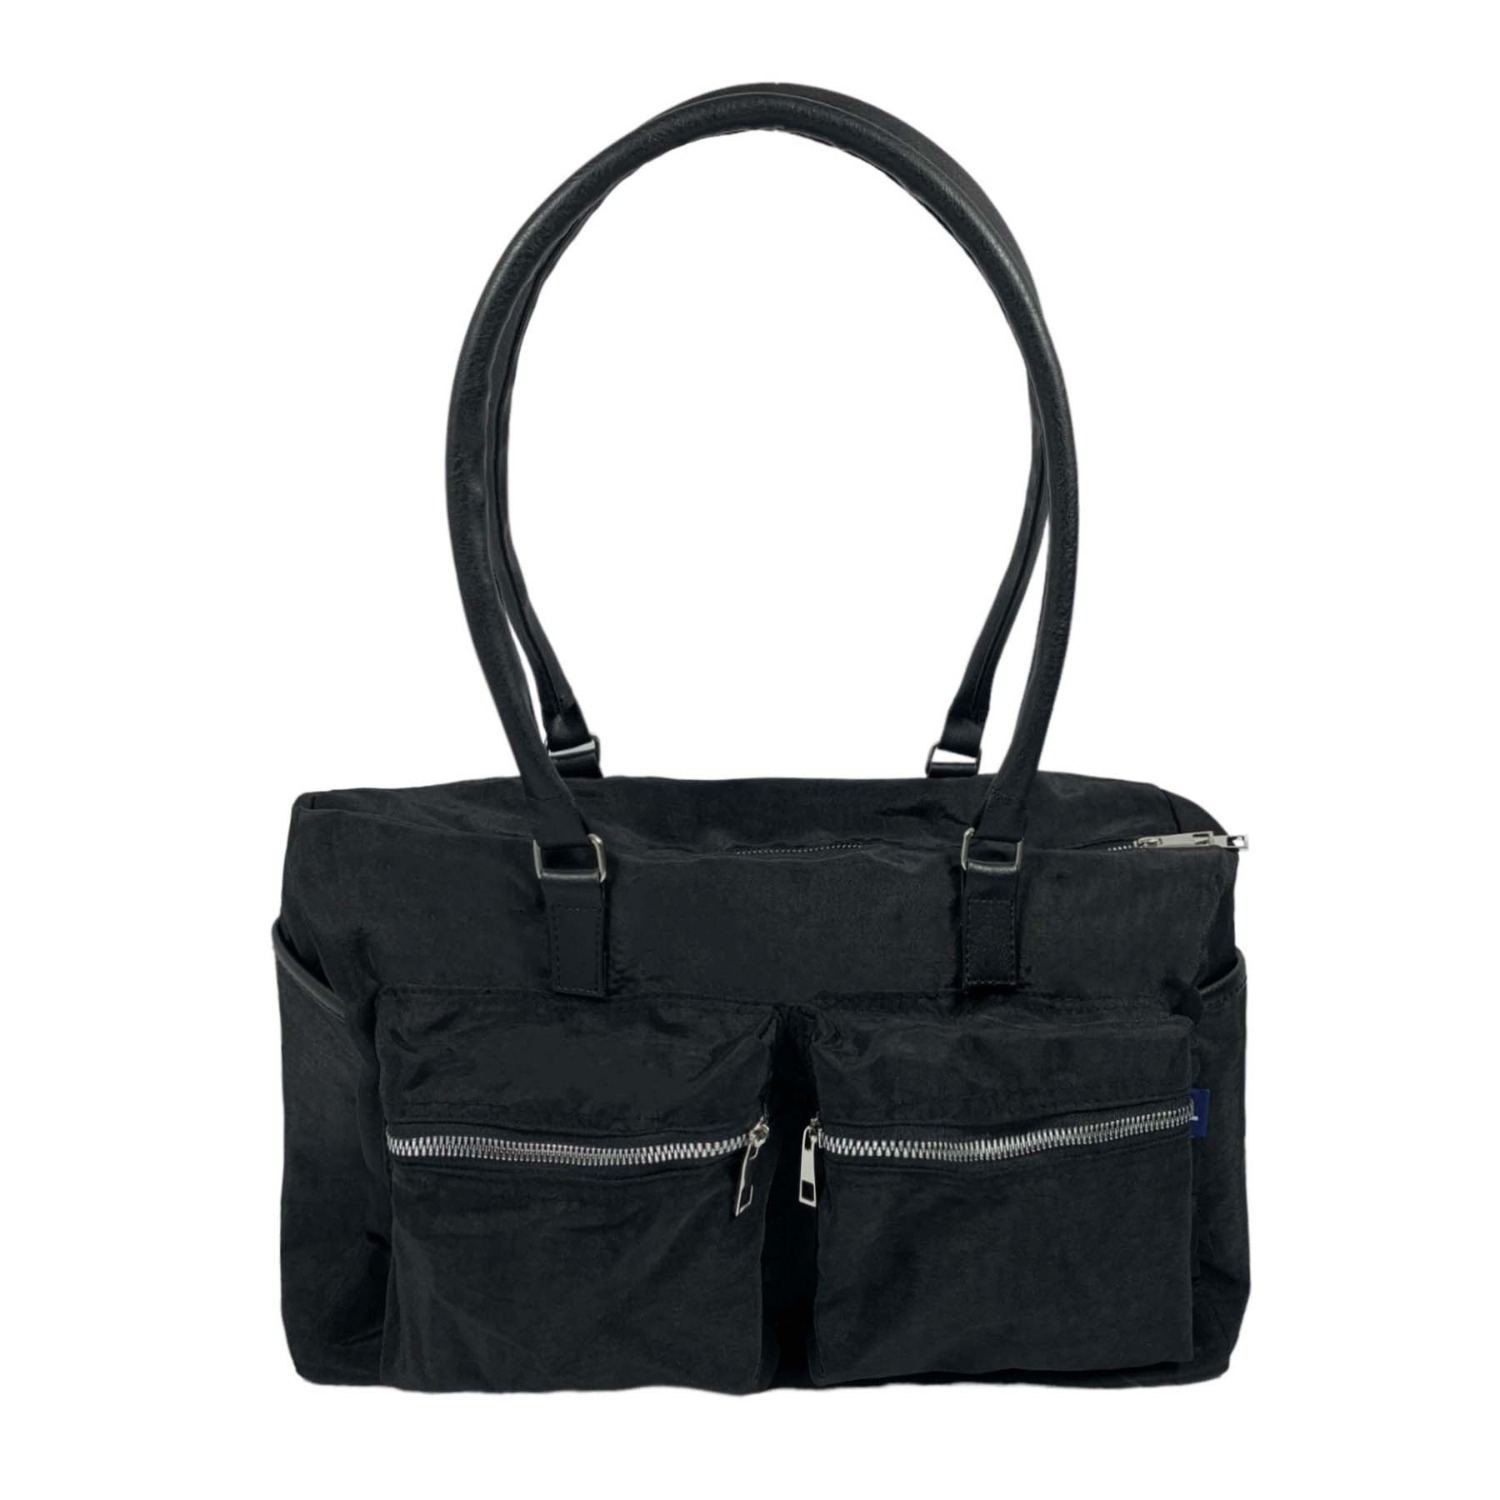 Locker Sporty Bag in Black